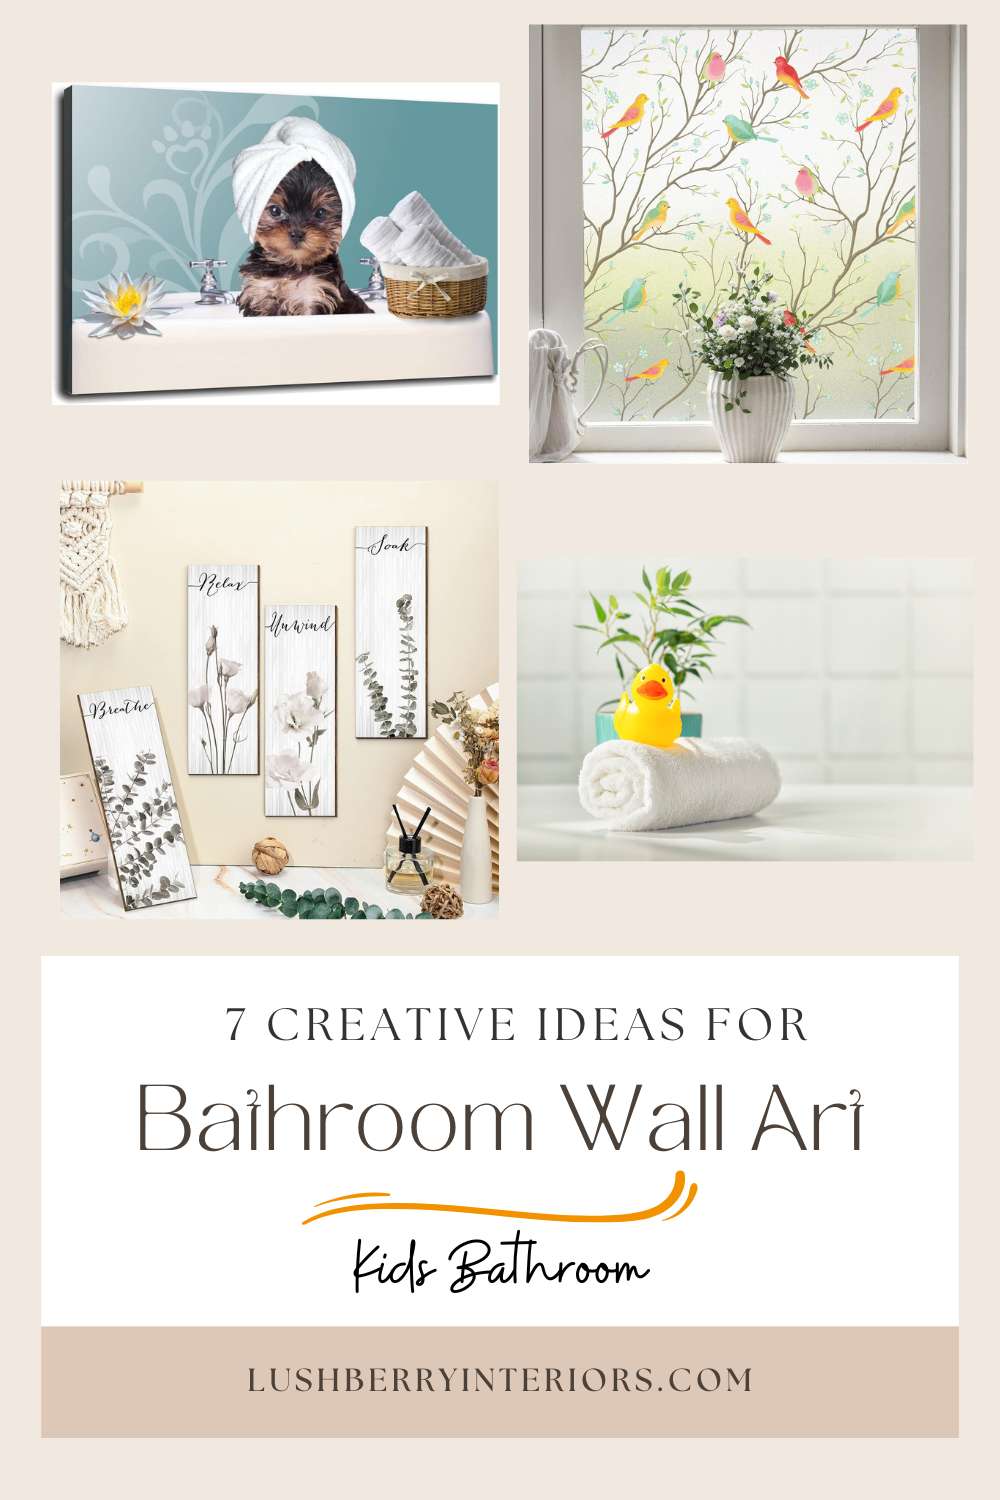 Bathroom Wall Art in 7 Creative Ways